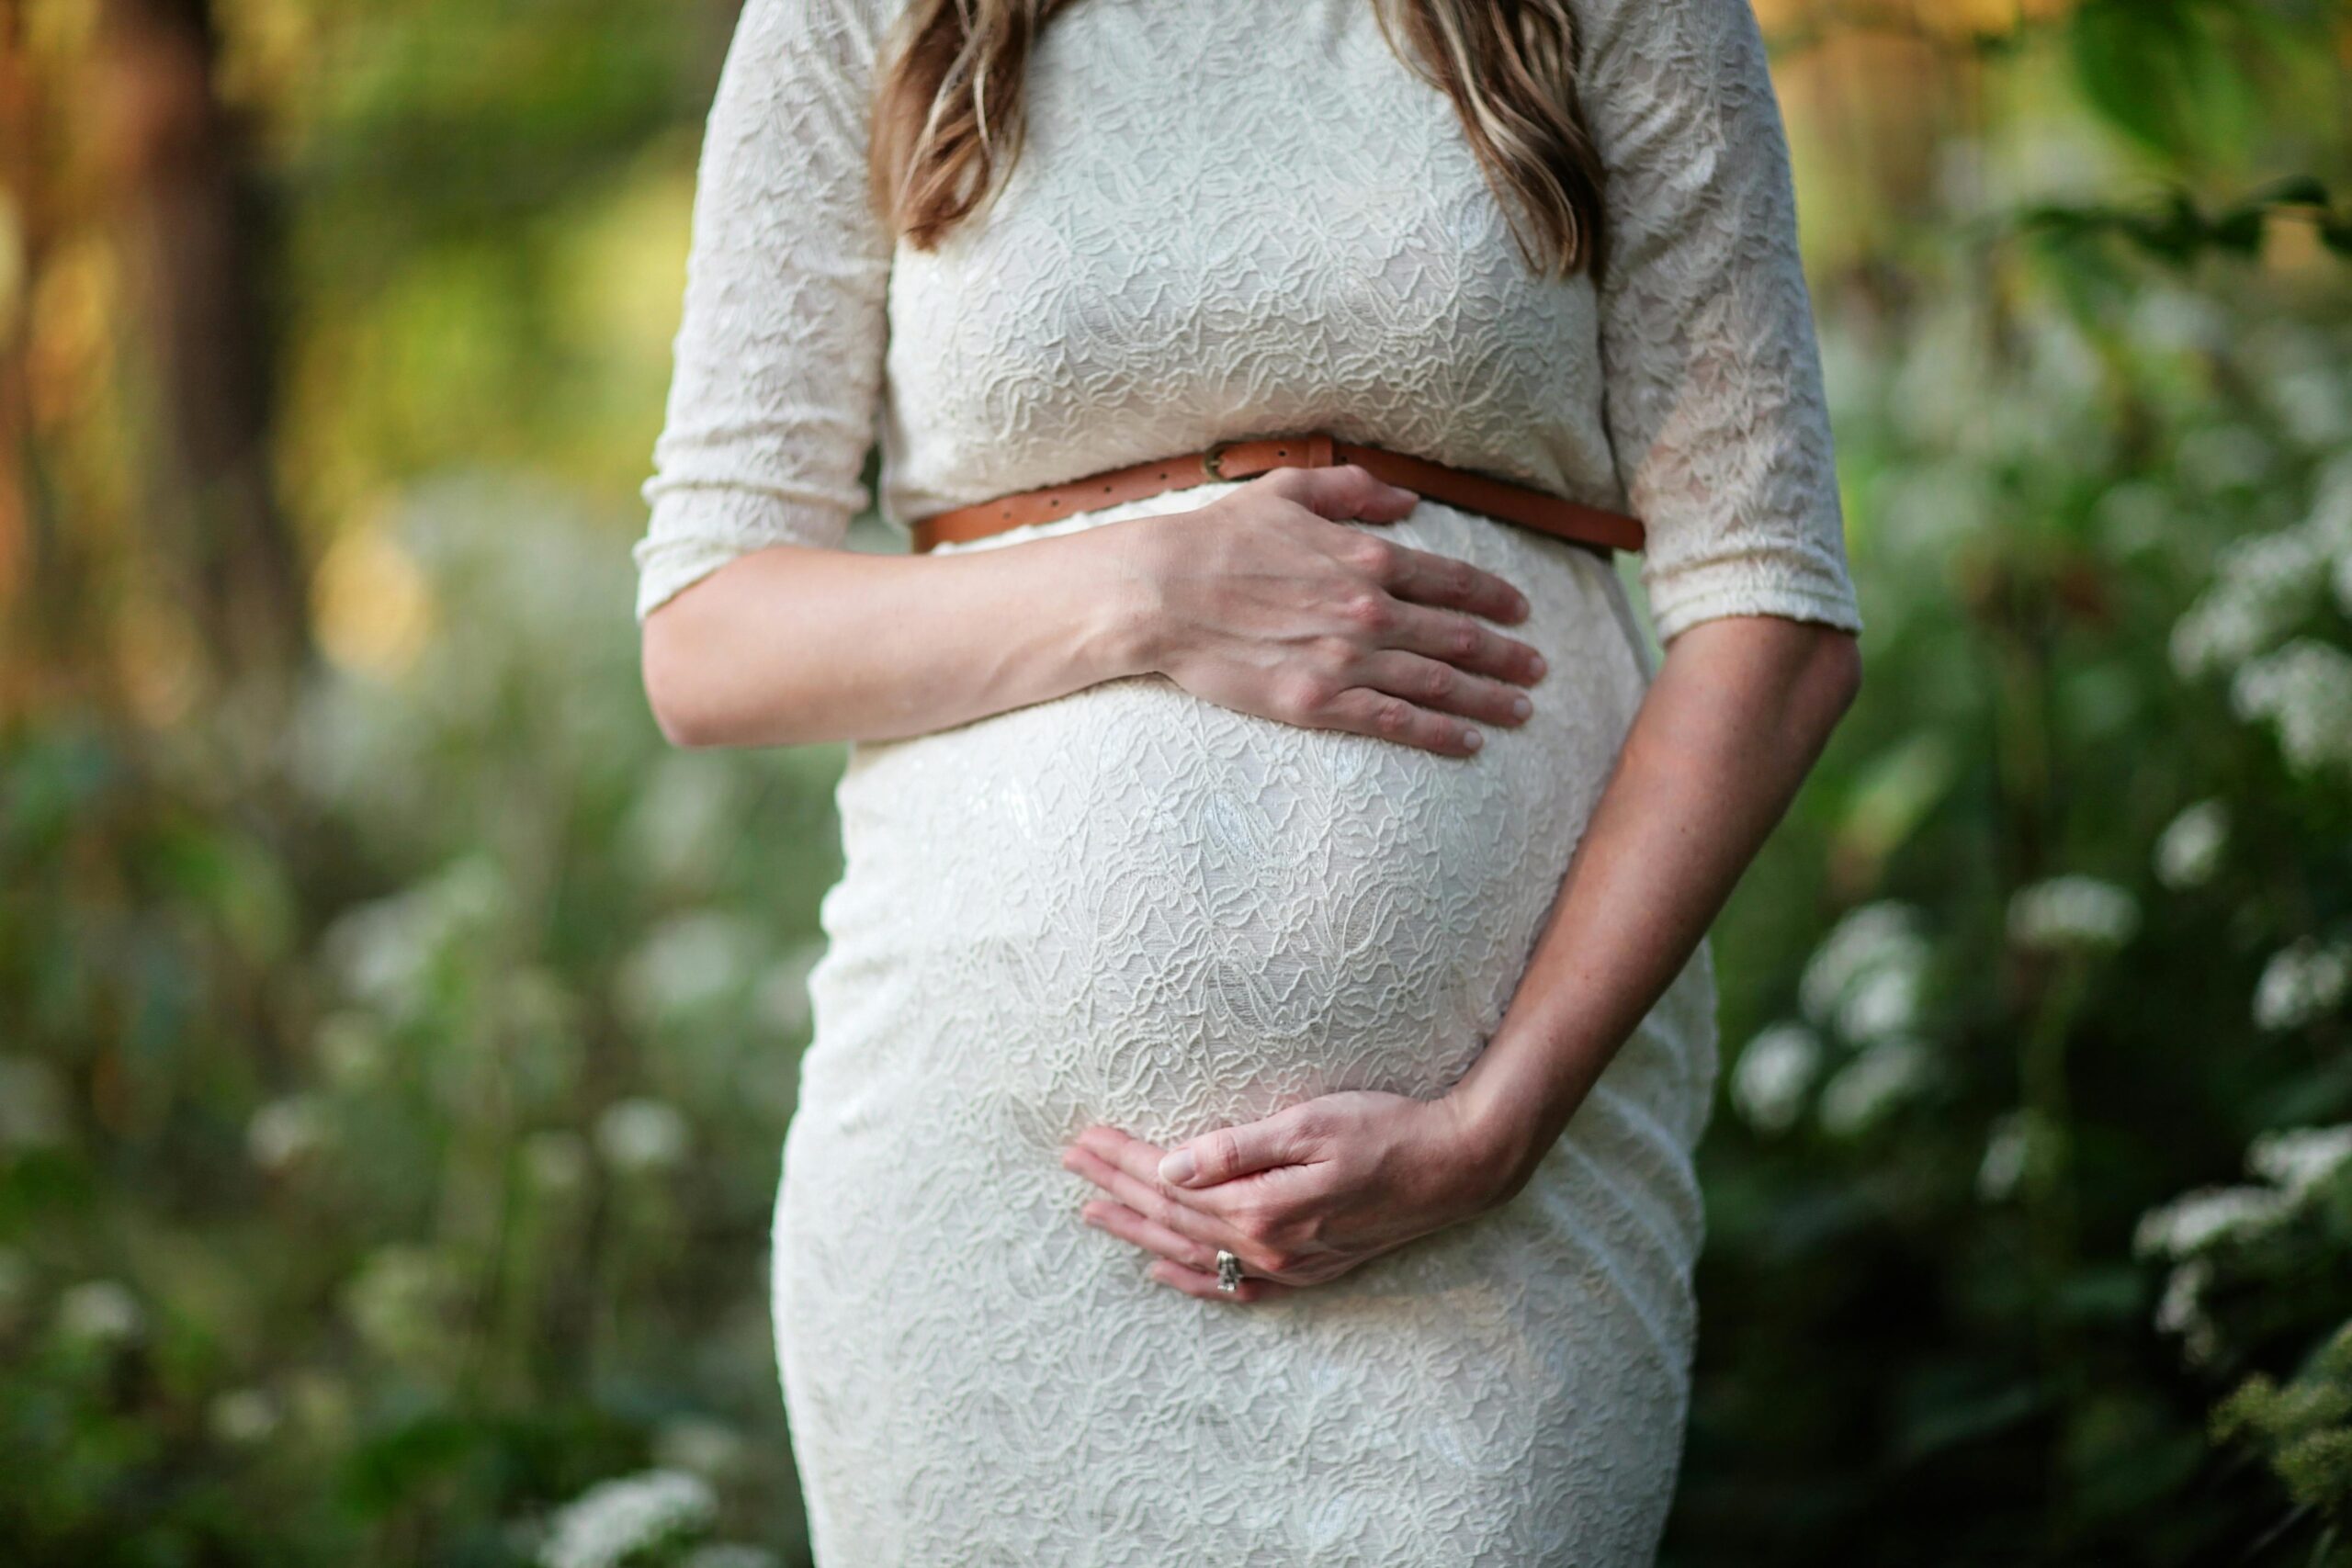 Πράγα: Νοσοκομείο έκανε καταλάθος άμβλωση σε έγκυο επειδή την μπέρδεψε με άλλη